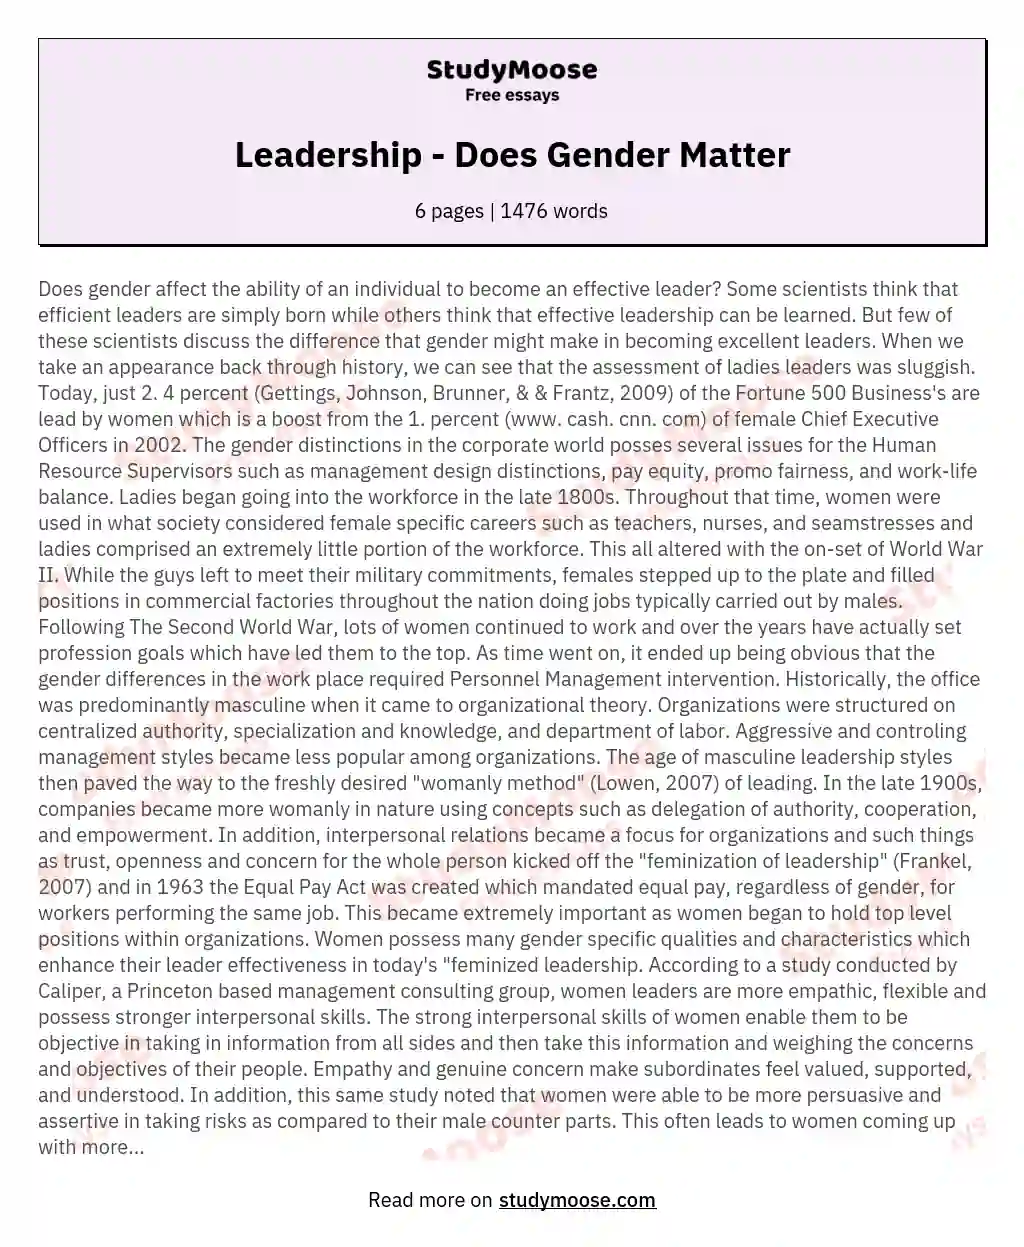 Leadership - Does Gender Matter essay